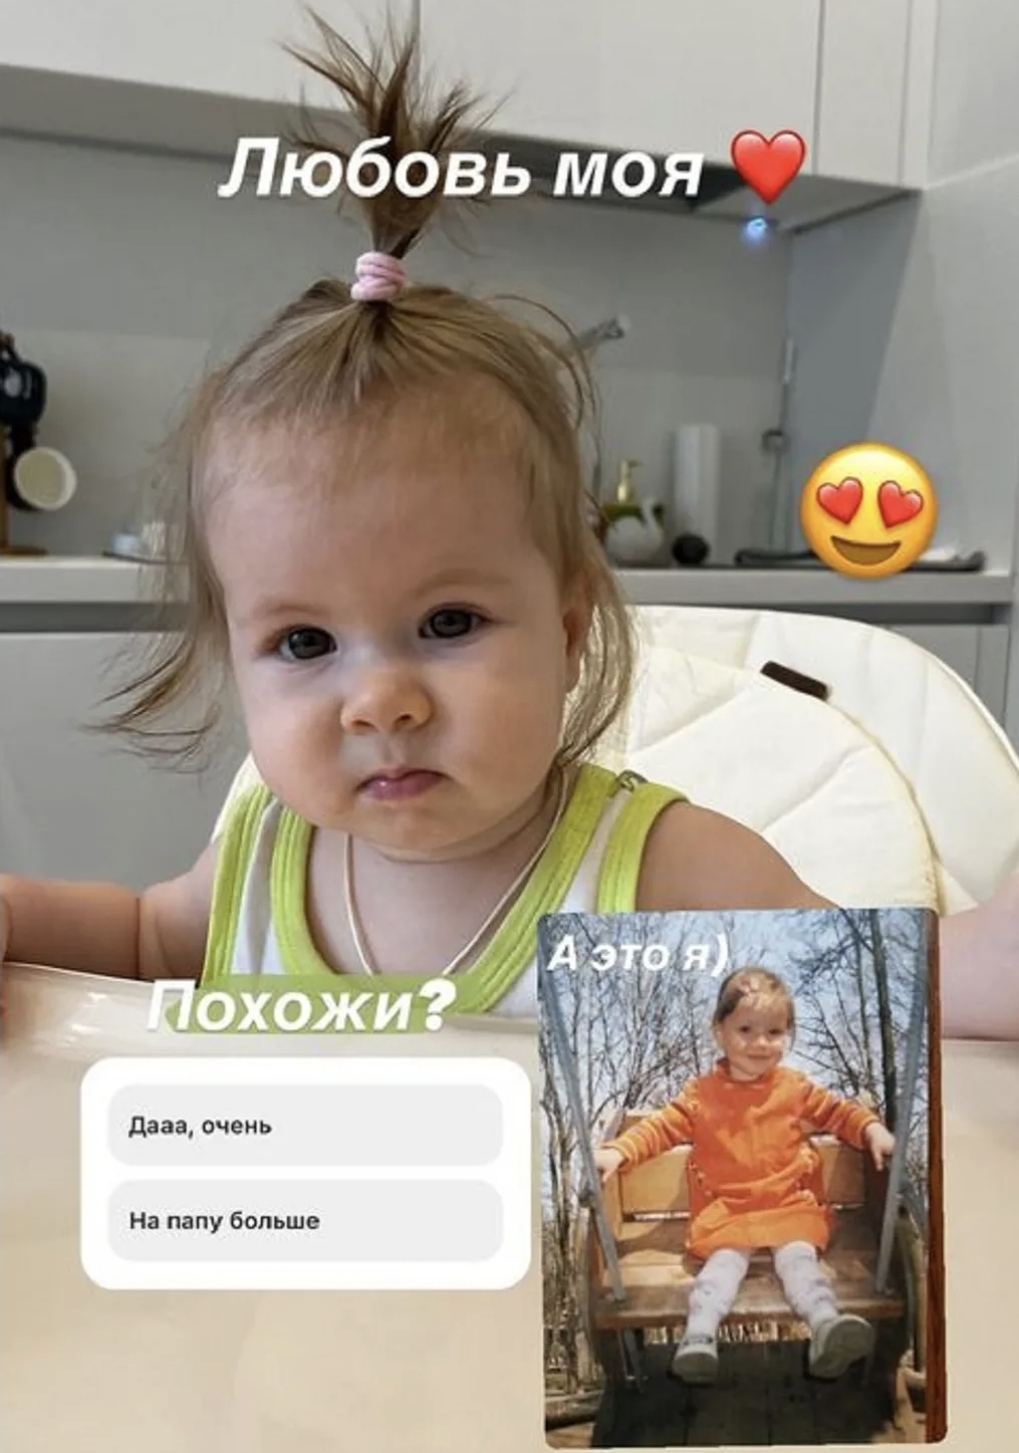 Мария Ильюхина сравнила себя и дочь в детстве. Аппетитные фото 19-летней звезды сериала "Воронины"